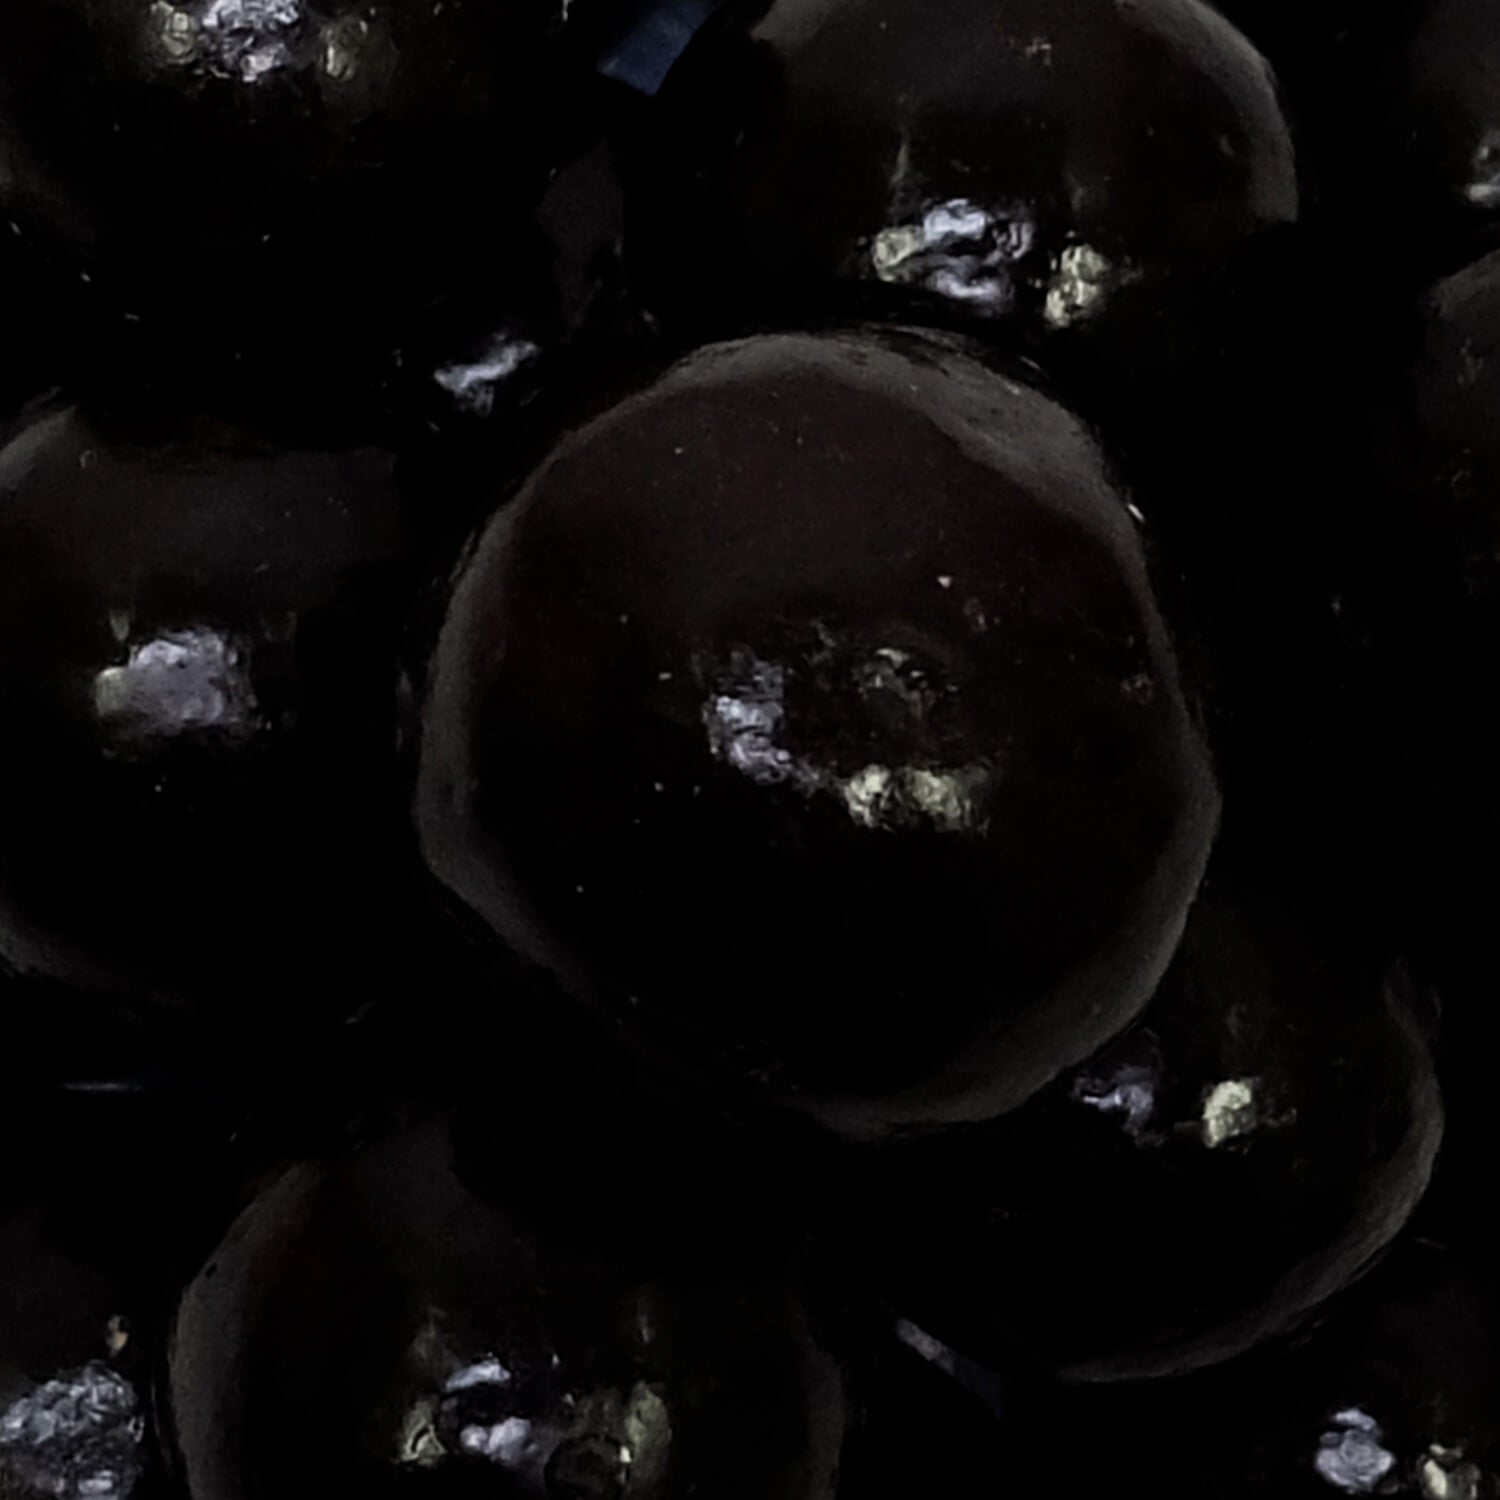 Gold label dark chocolate maltballs